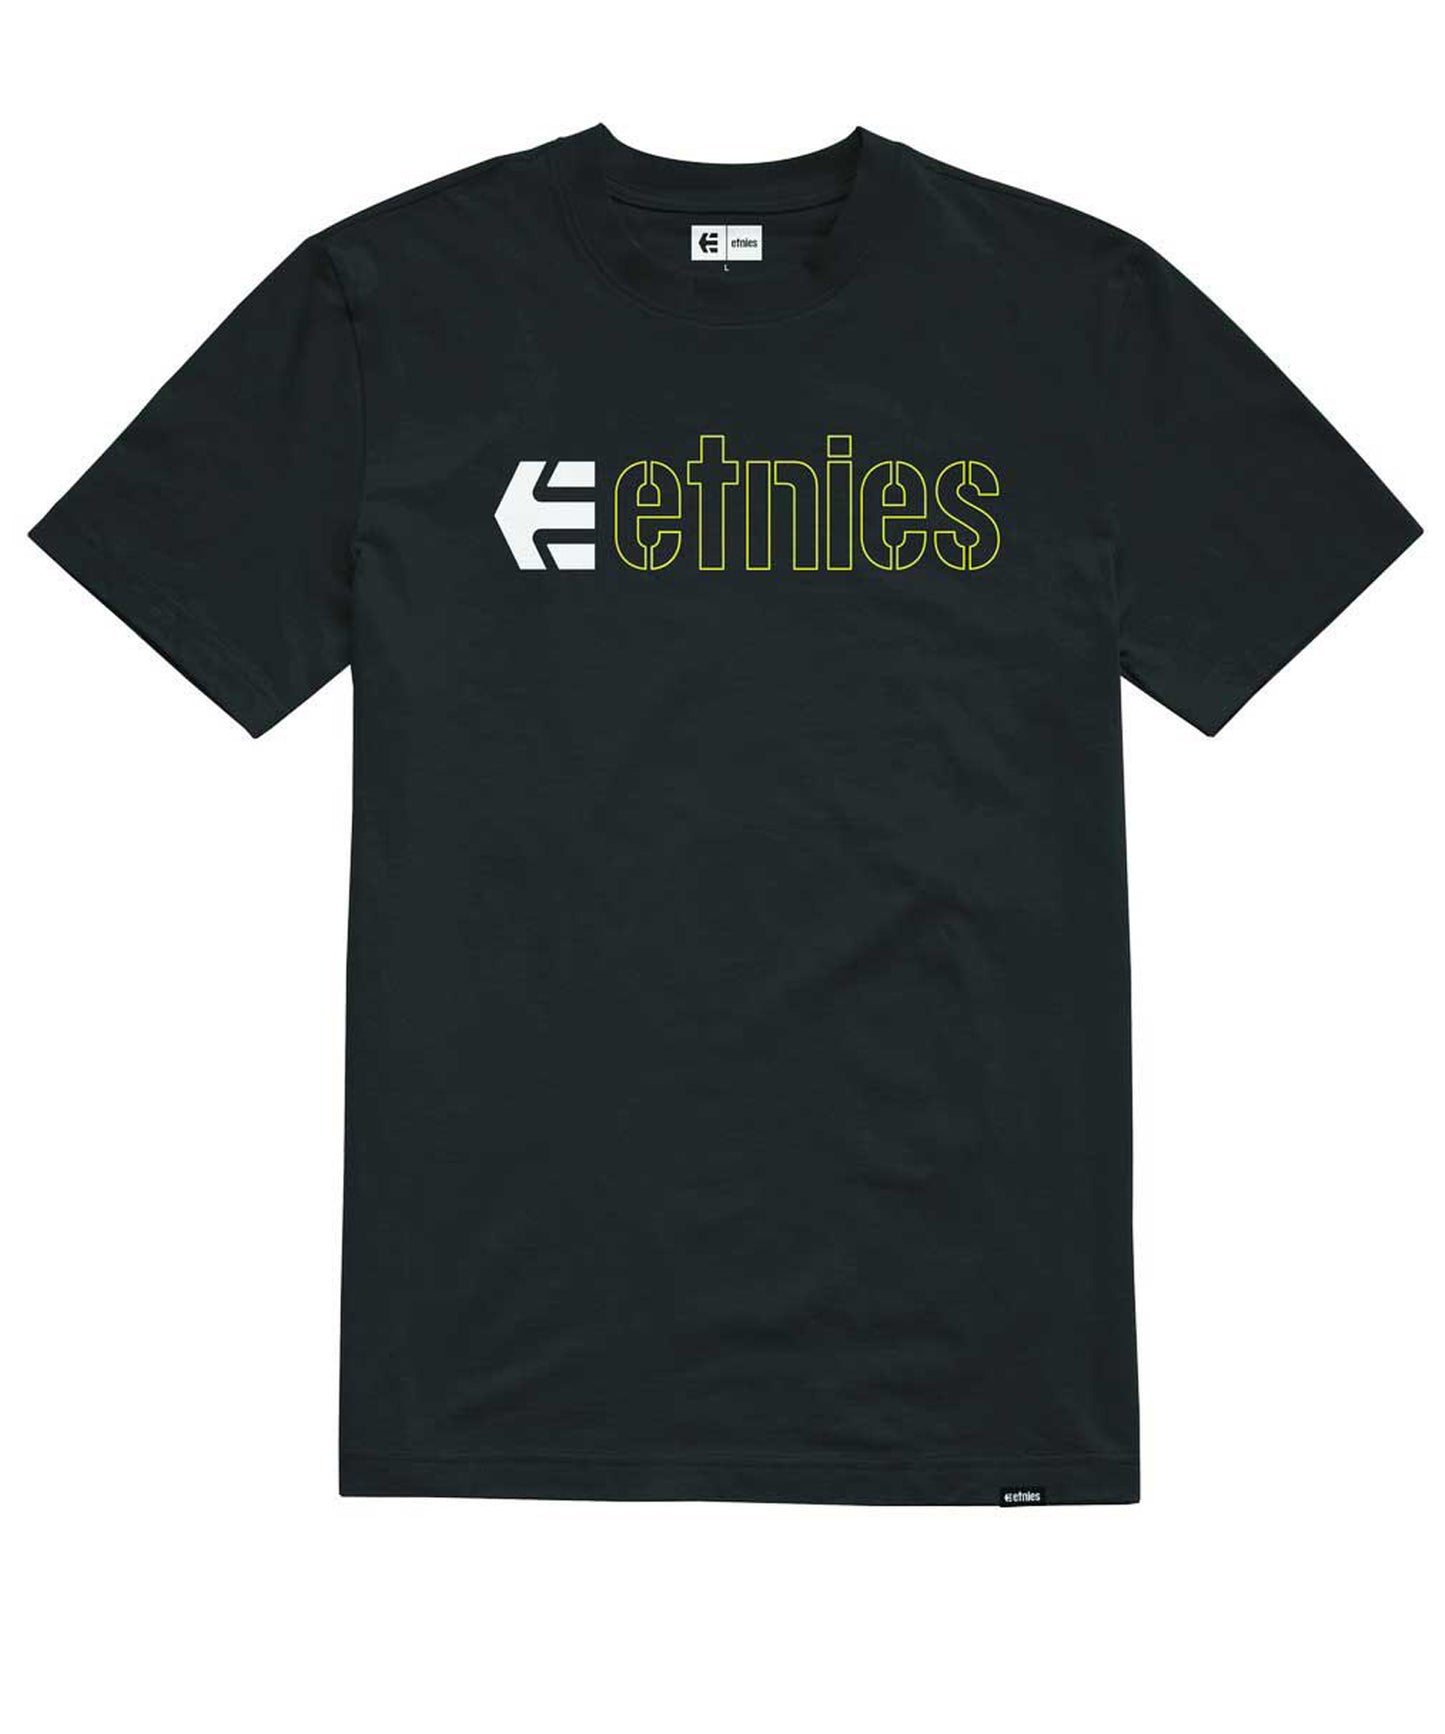 etnies-camiseta-e corp black-color negro-manga corta-algodón reciclado-160 grms-serigrafía etnies en el pecho.